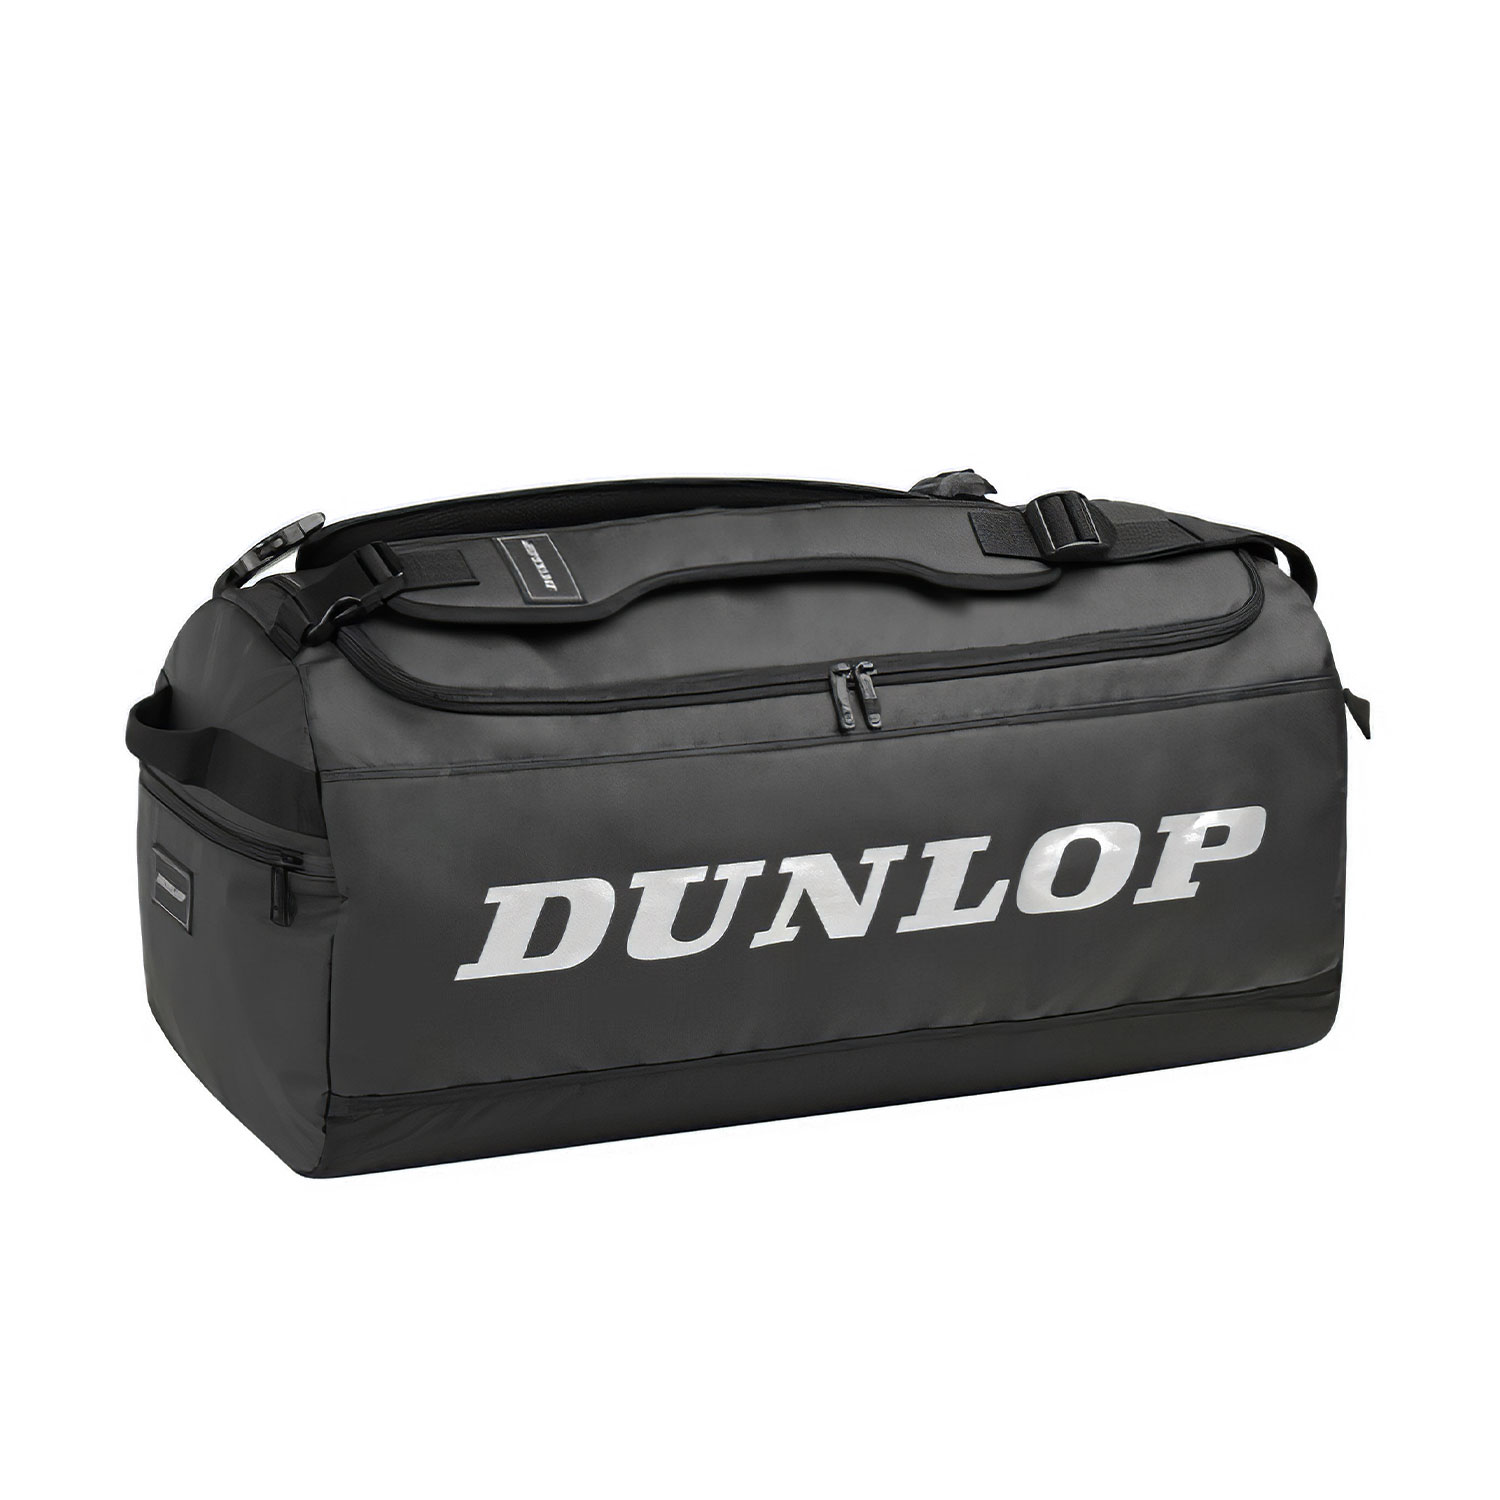 Dunlop Pro Borsone - Black